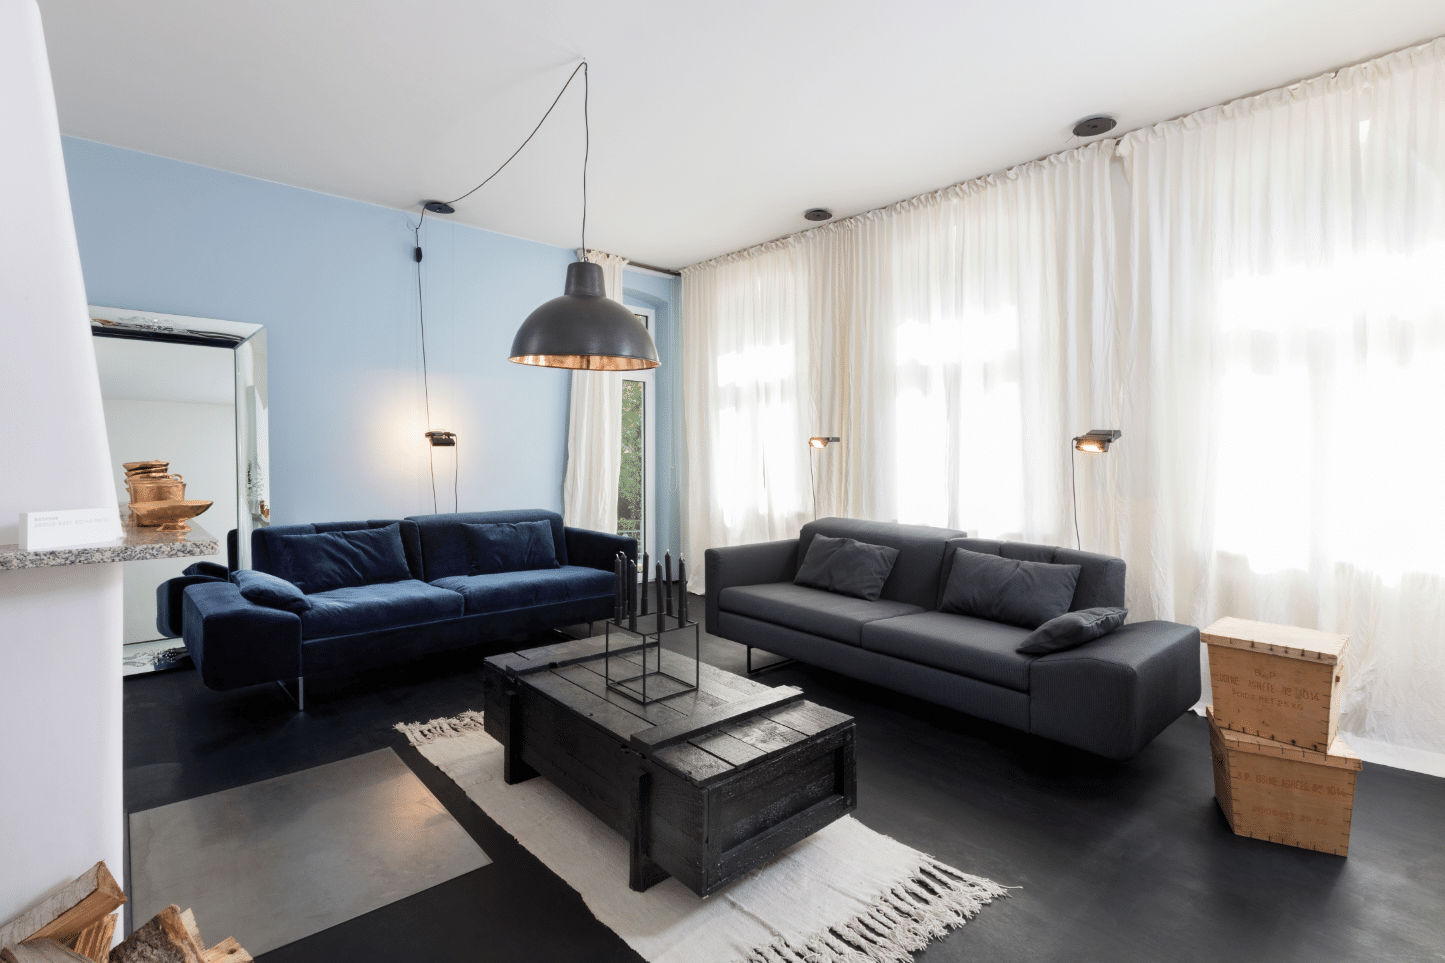 Wohnzimmer mit Kamin, blauer Wand und dunkler Wohnlandschaft von Brühl erhältlich im Wohnhaus Grill & Ronacher.